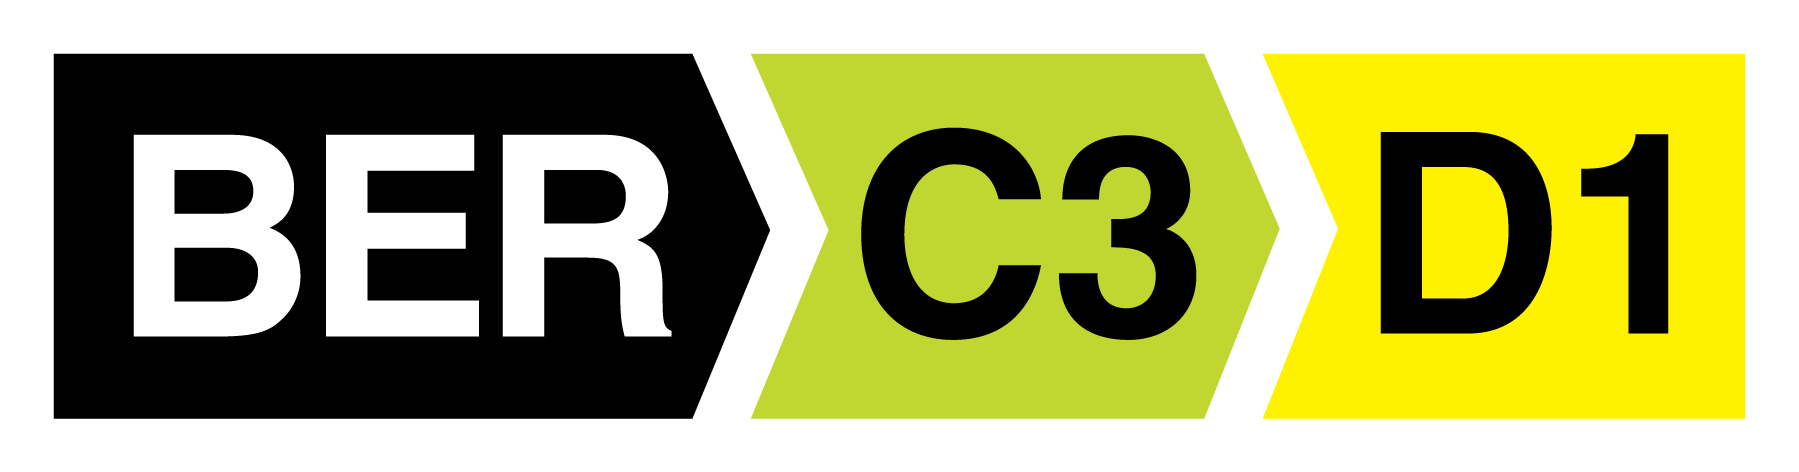 C3 > D1